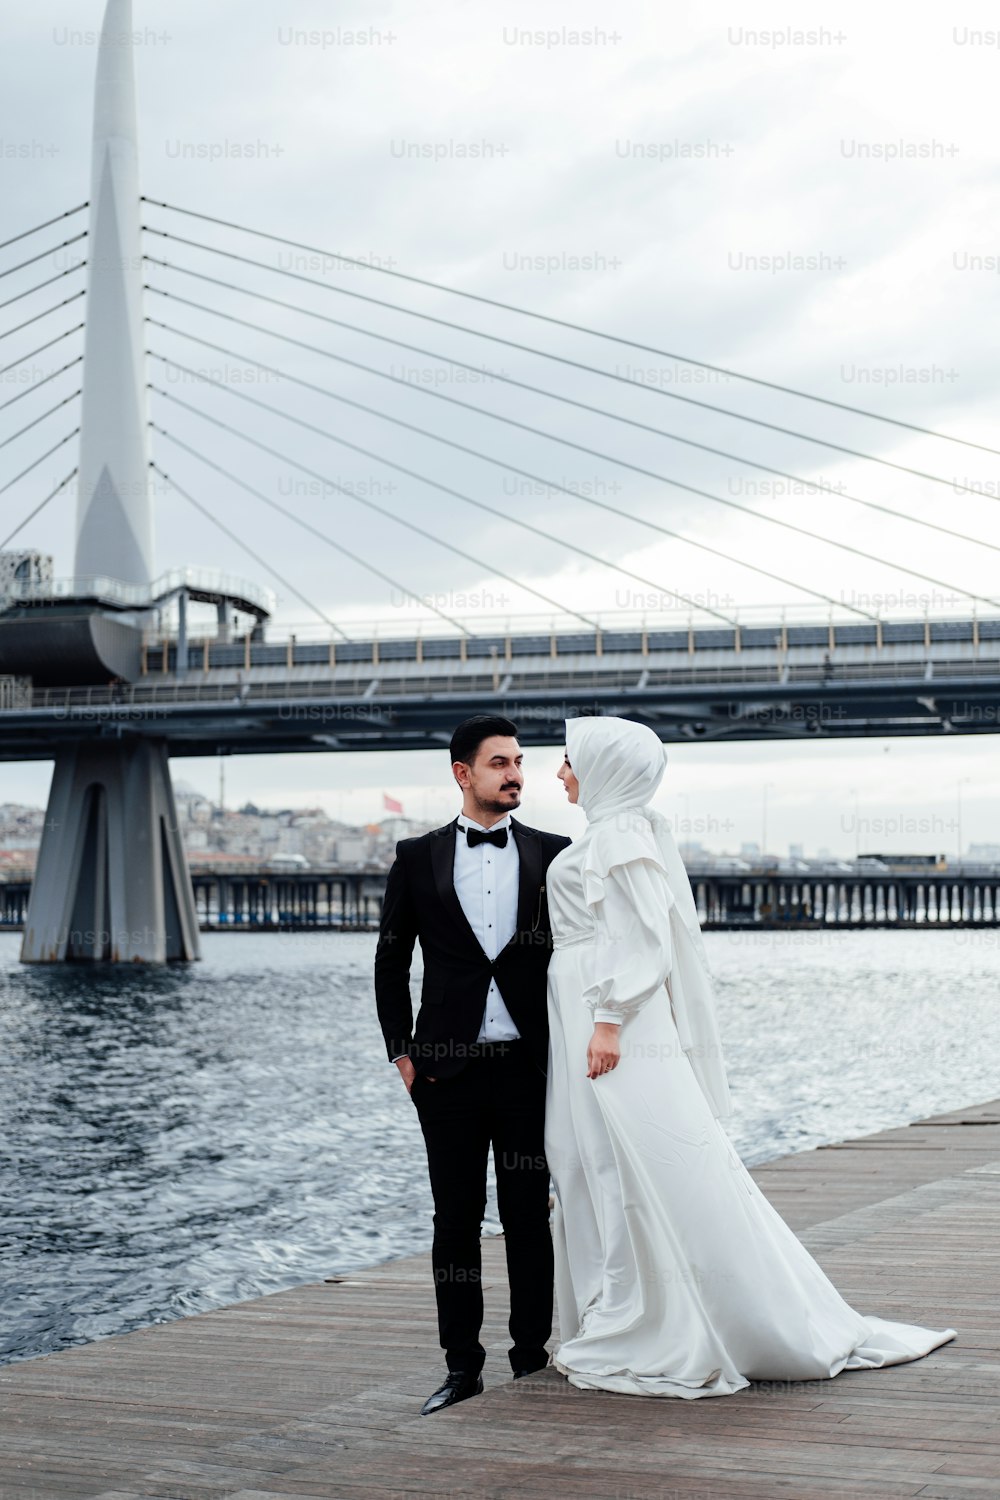 Un hombre y una mujer en traje de boda